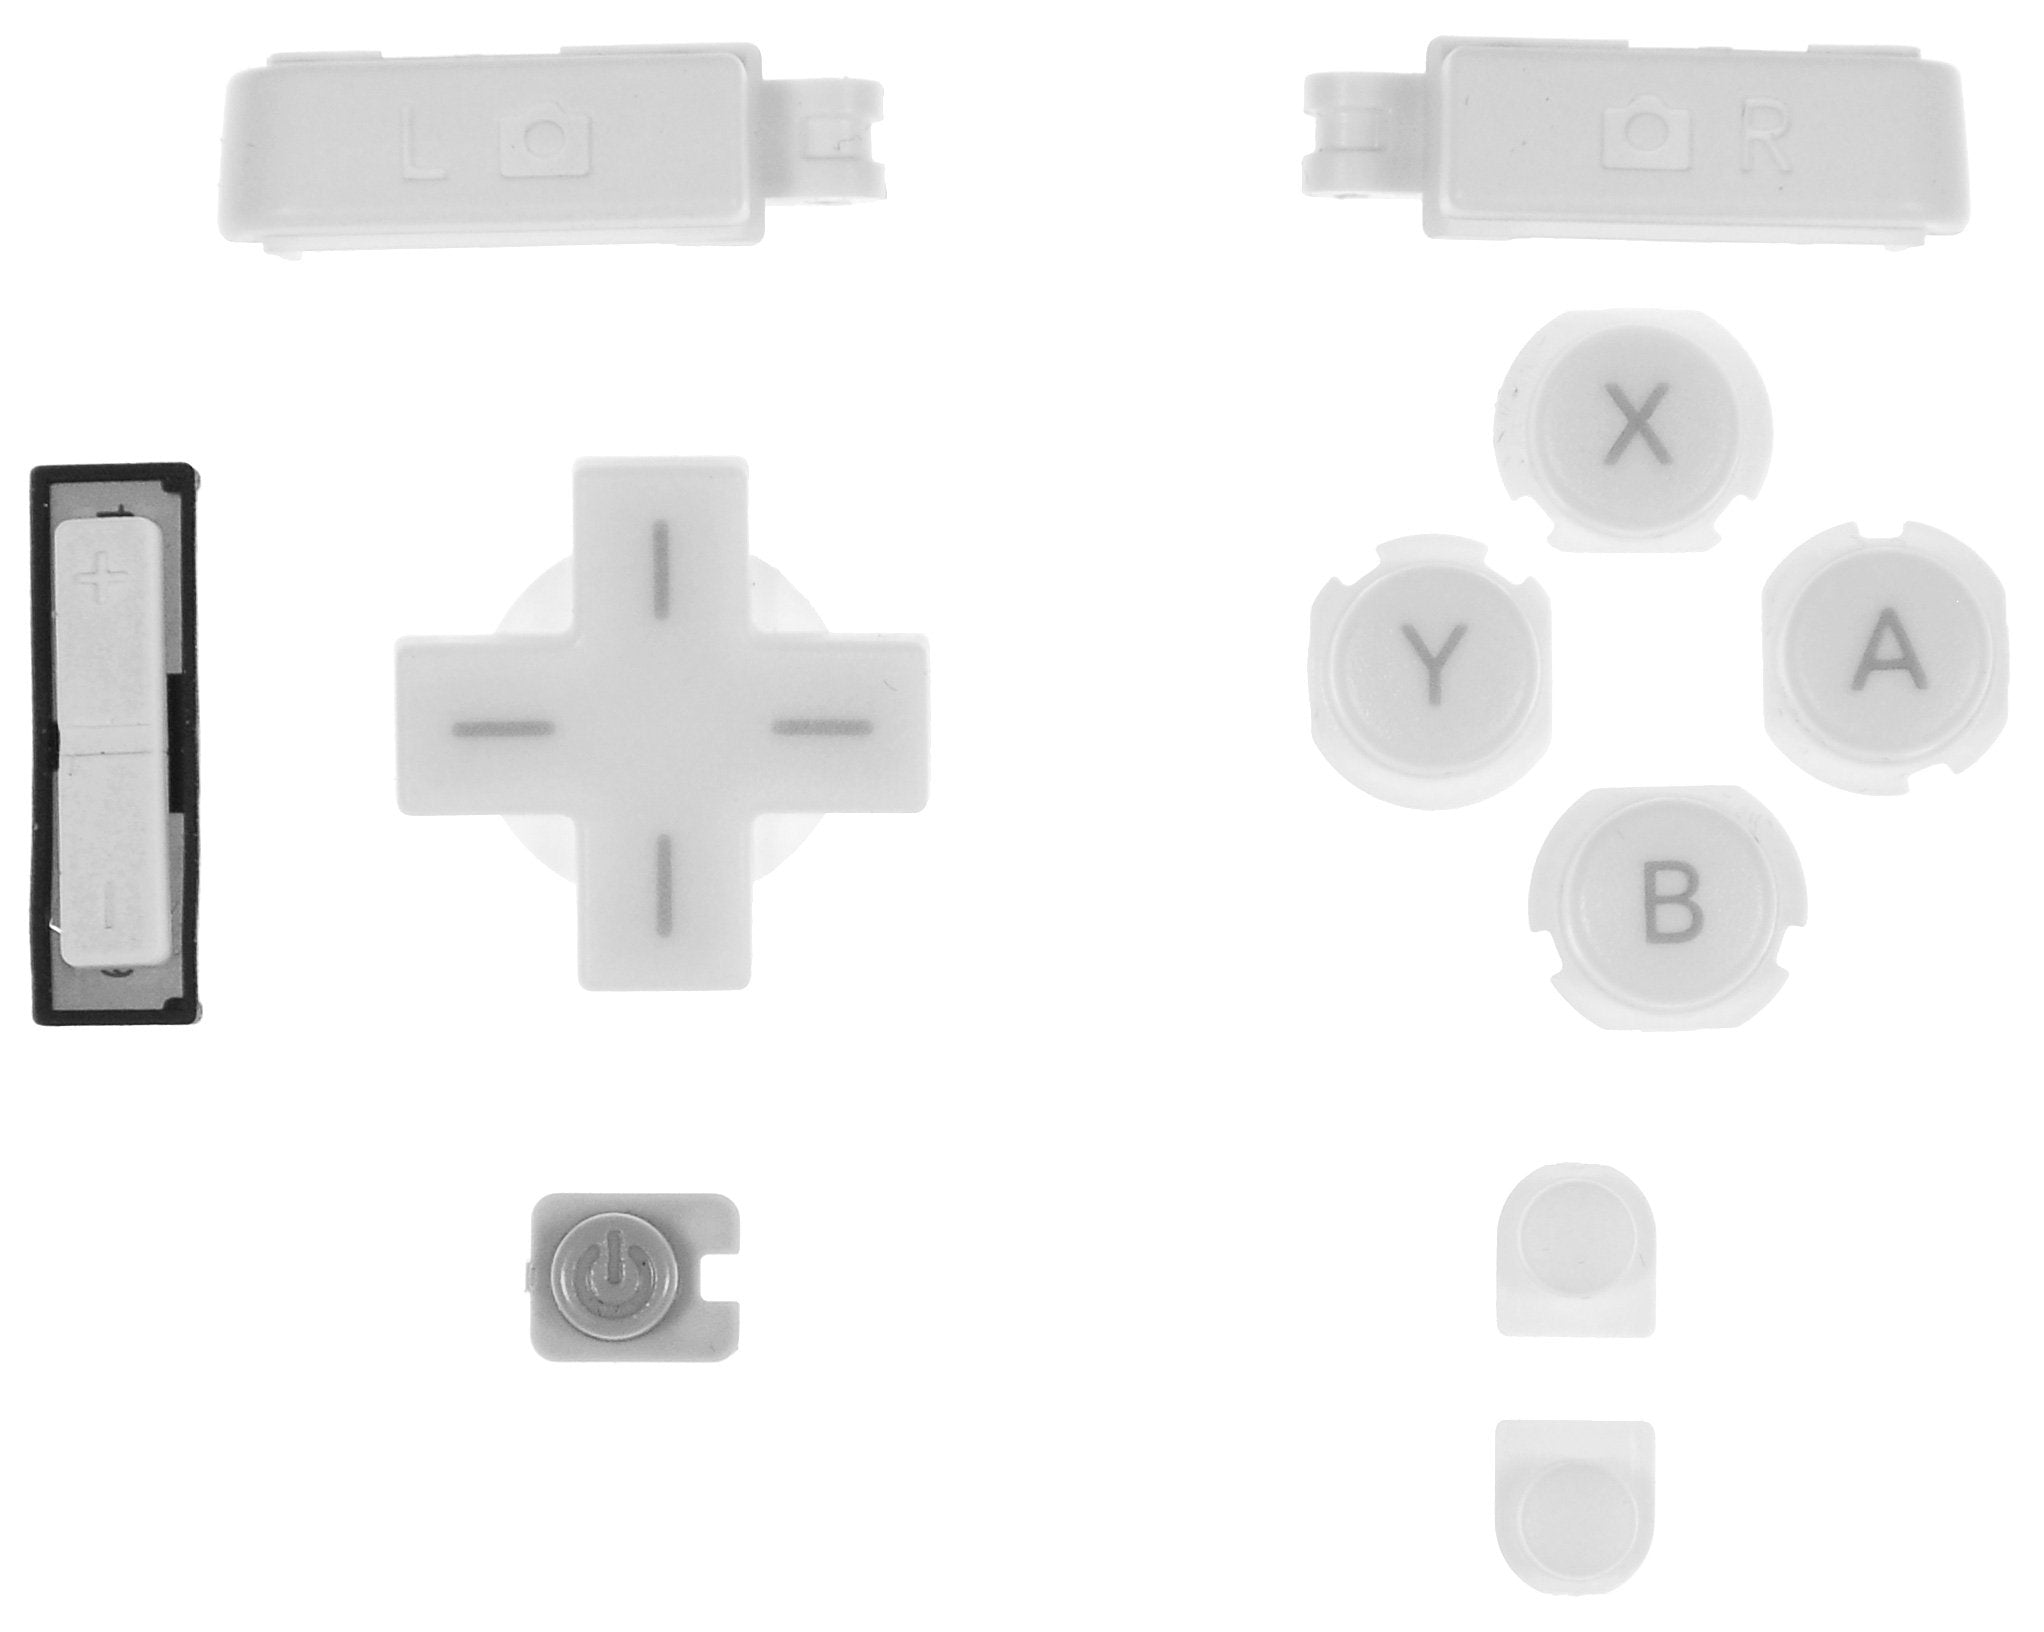 Nintendo DSi Input Buttons